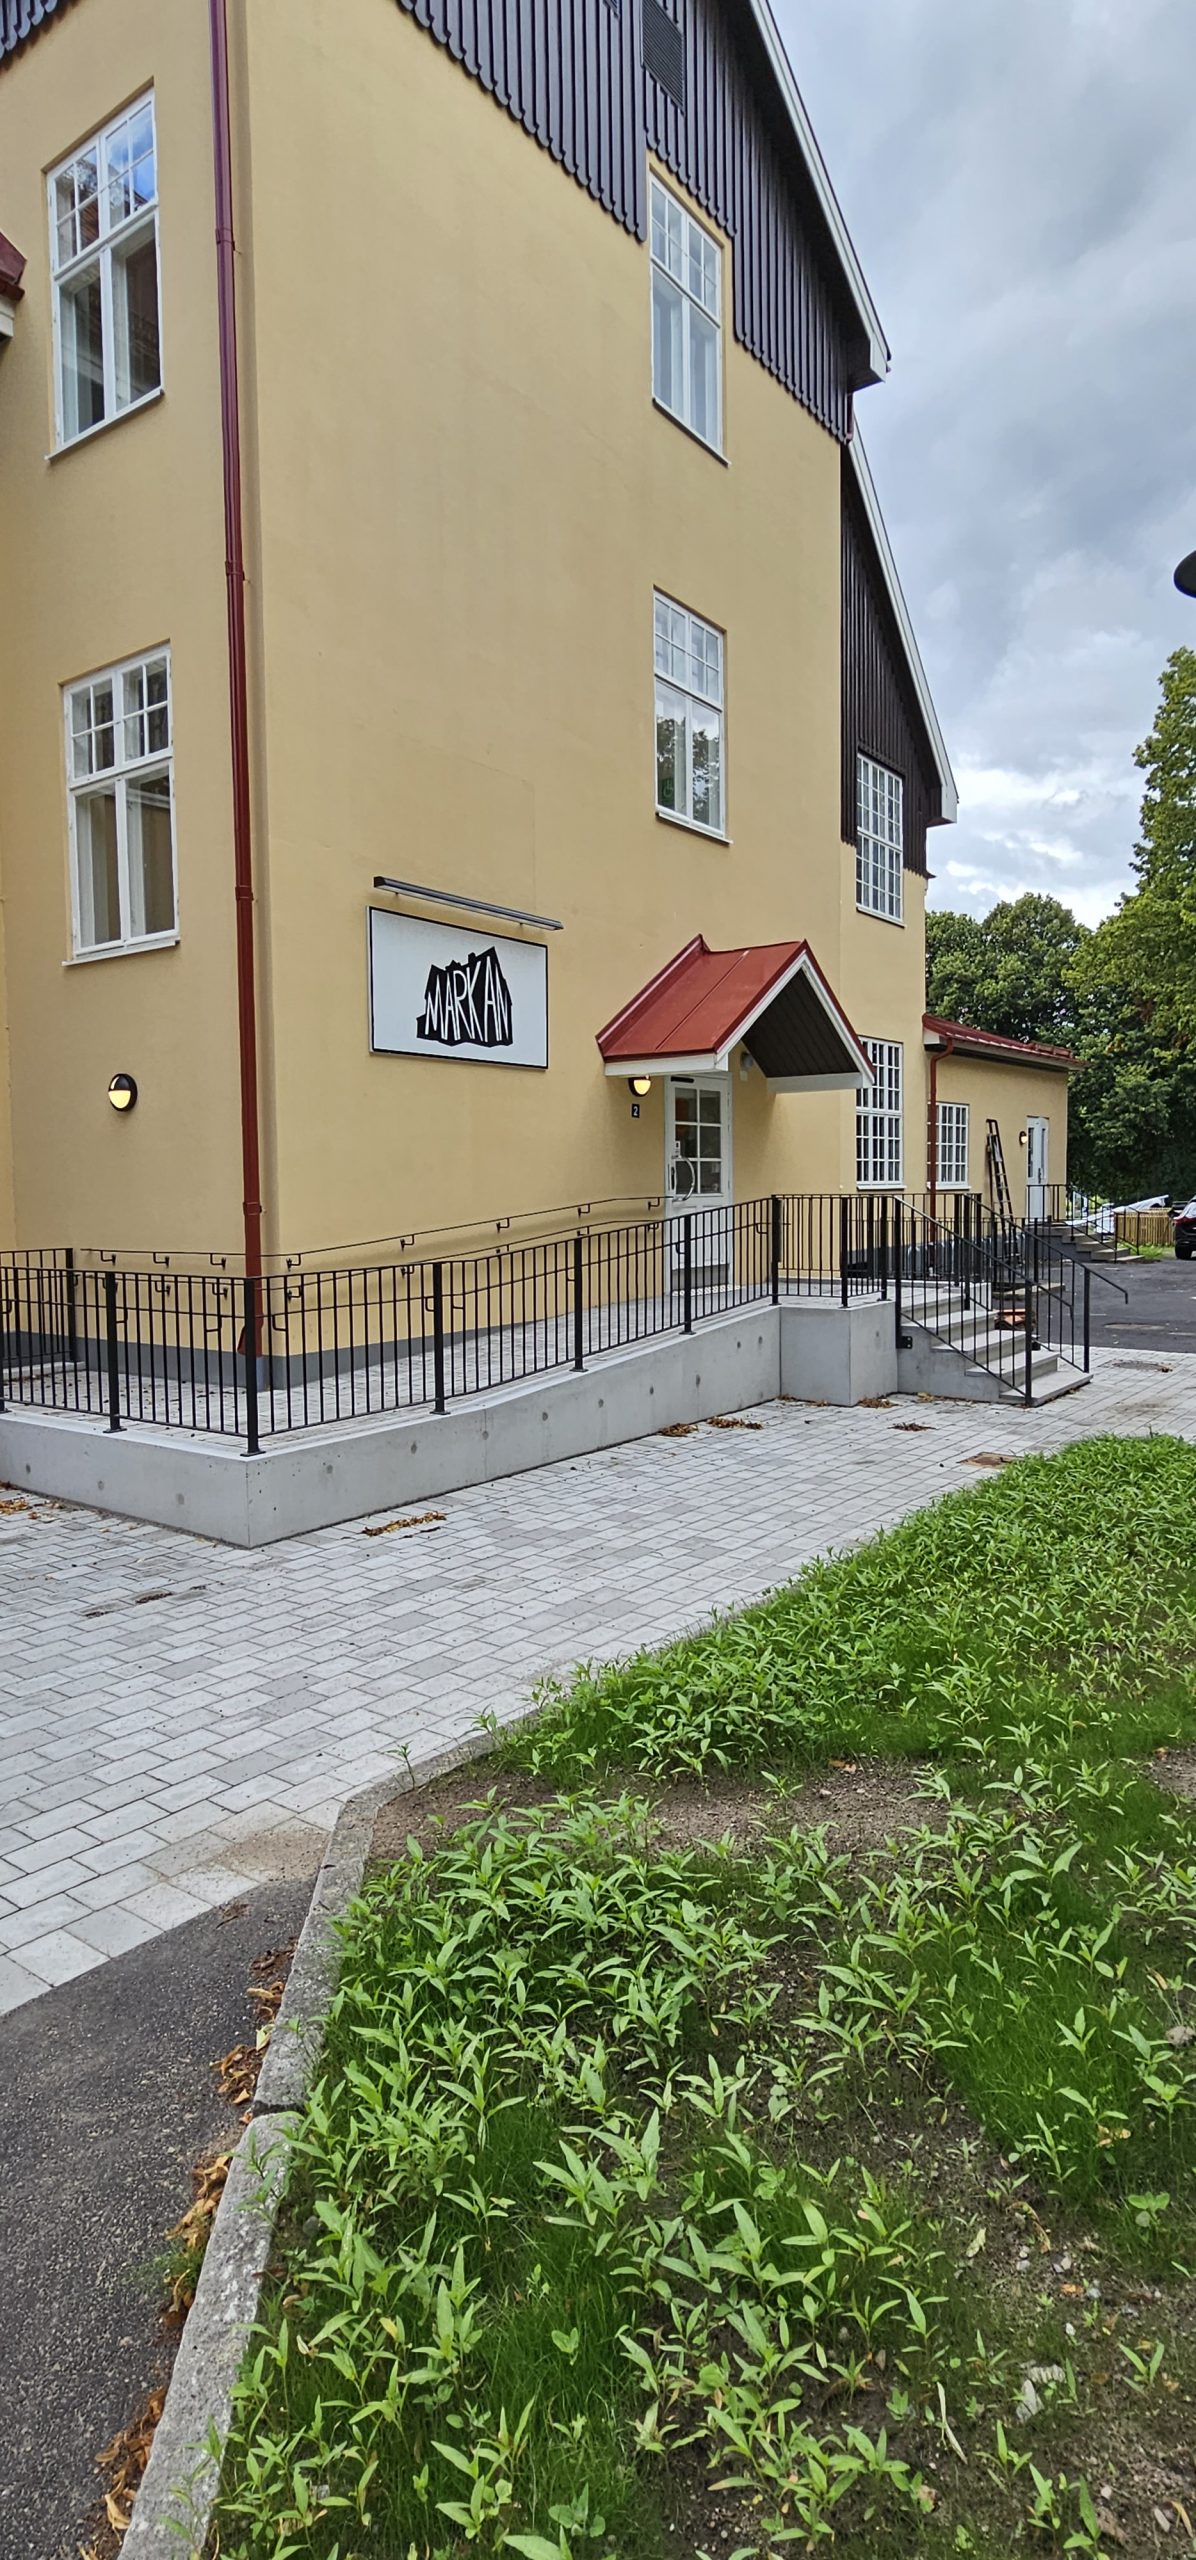 markan i Hässleholm, utvändigt med rullstolsramp. Fasad i gul puts. 